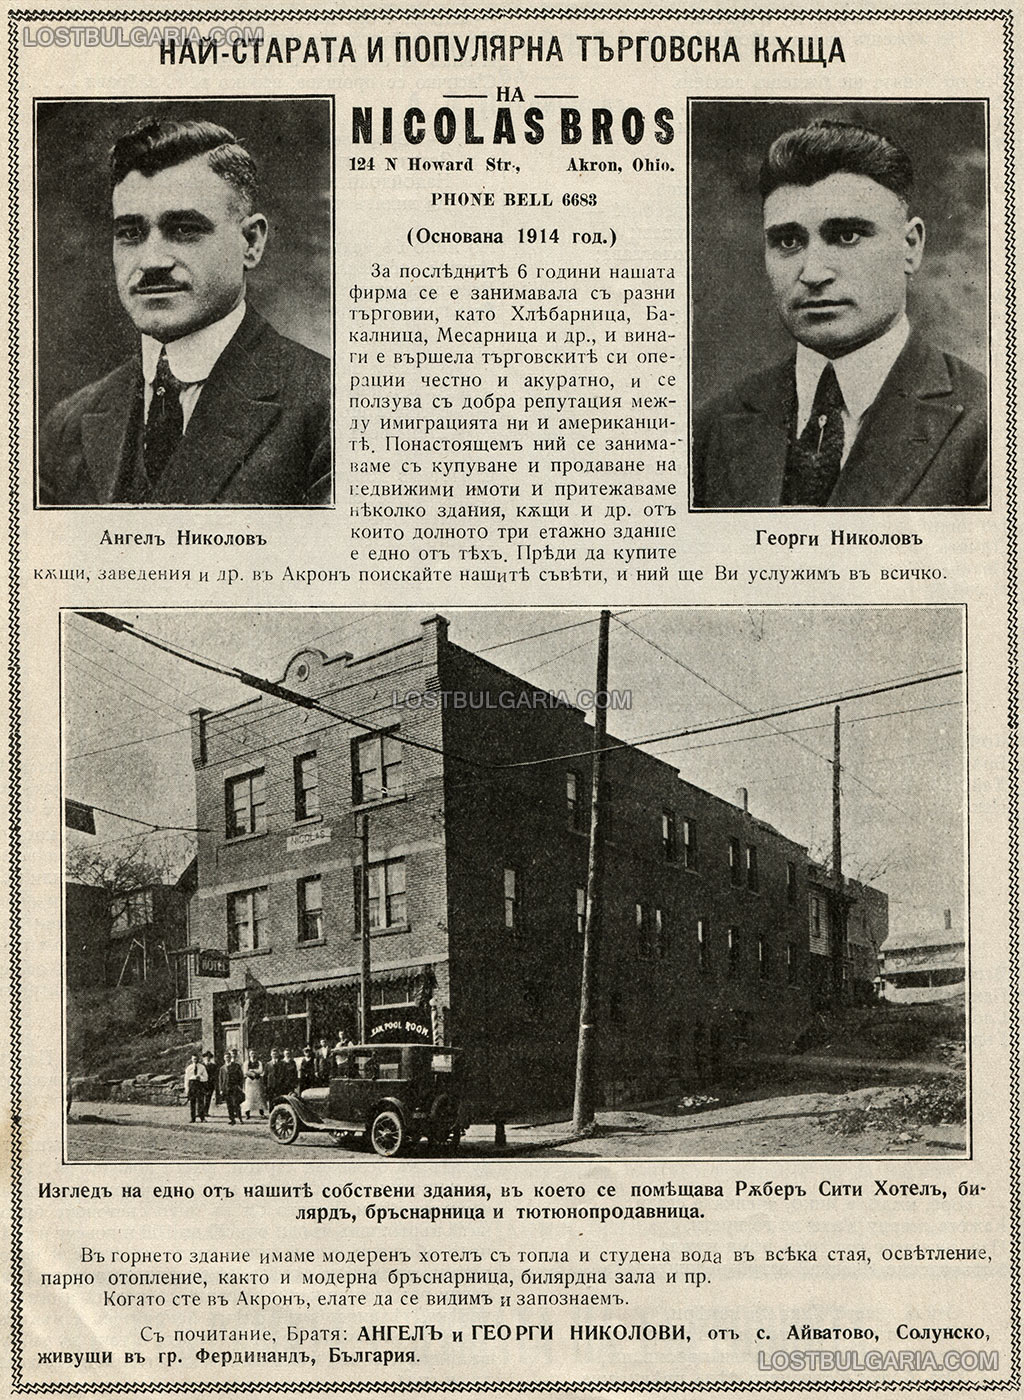 Реклама на търговската къща на братя Ангел и Георги Николови, родом от село Айватово, Солунско (живущи в гр. Фердинанд, България) в Акрон, Охайо, 1921 г.